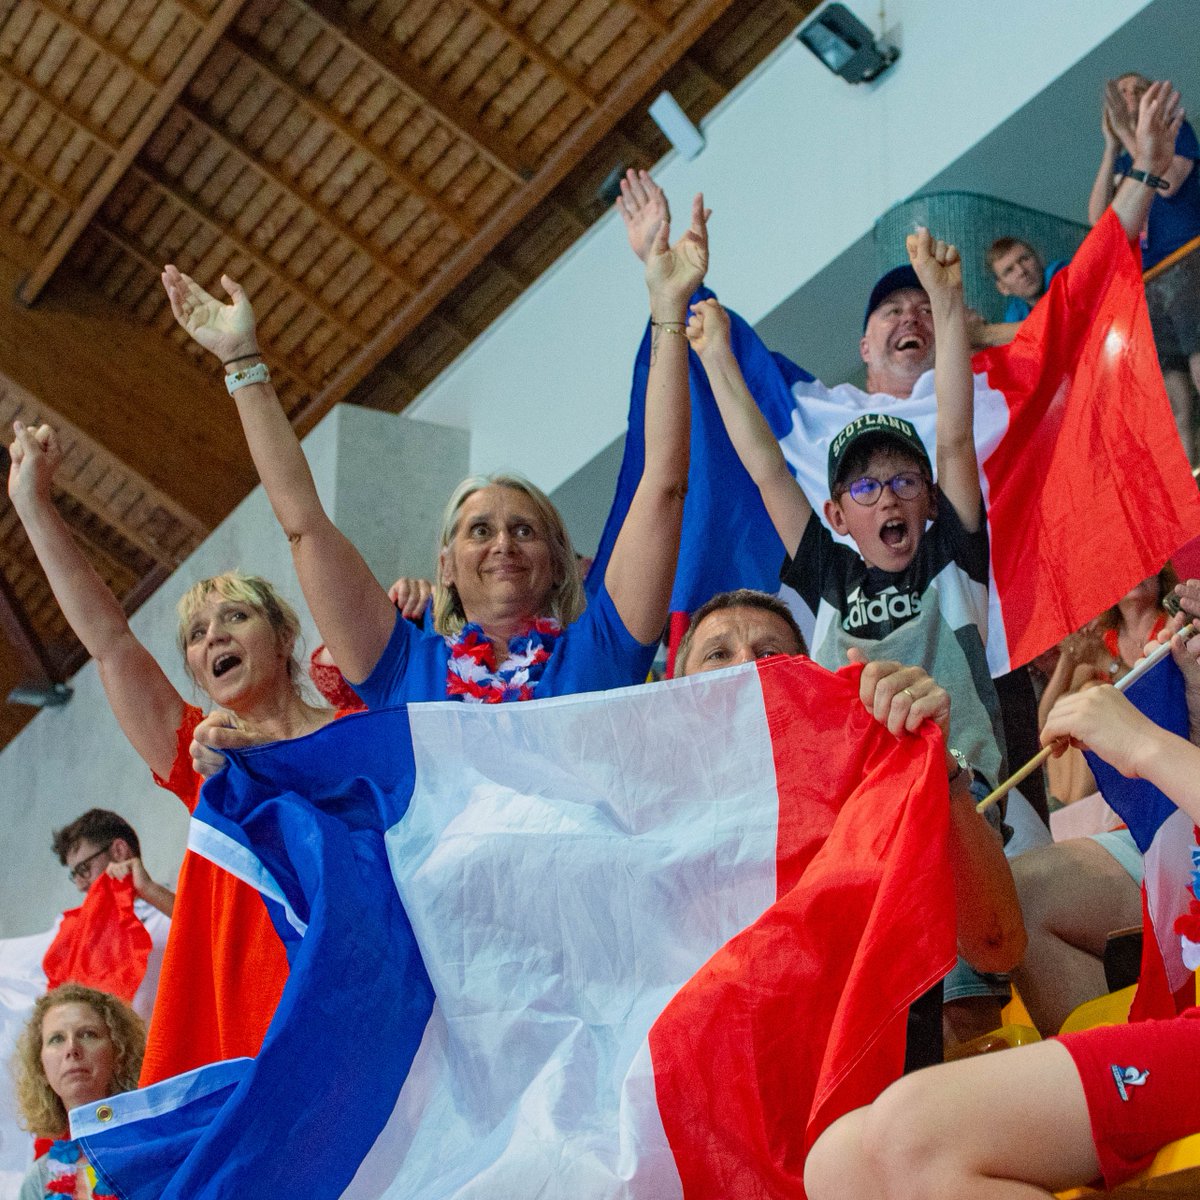 🏊 #Natation 🏊 Championnats d'Europe 🌍 📅 21 au 27 avril 📍 Funchal #Portugal 🇵🇹 La #France remporte 22 médailles dont 7 titres 🇫🇷 🥇 7 en or 🥈 8 en argent 🥉 7 en bronze ▶️ 6ème nation européenne 🔵⚪🔴 Bravo les #Bleus 👏👏👏 @Sports_gouv @FFNatation @boyonalexandre